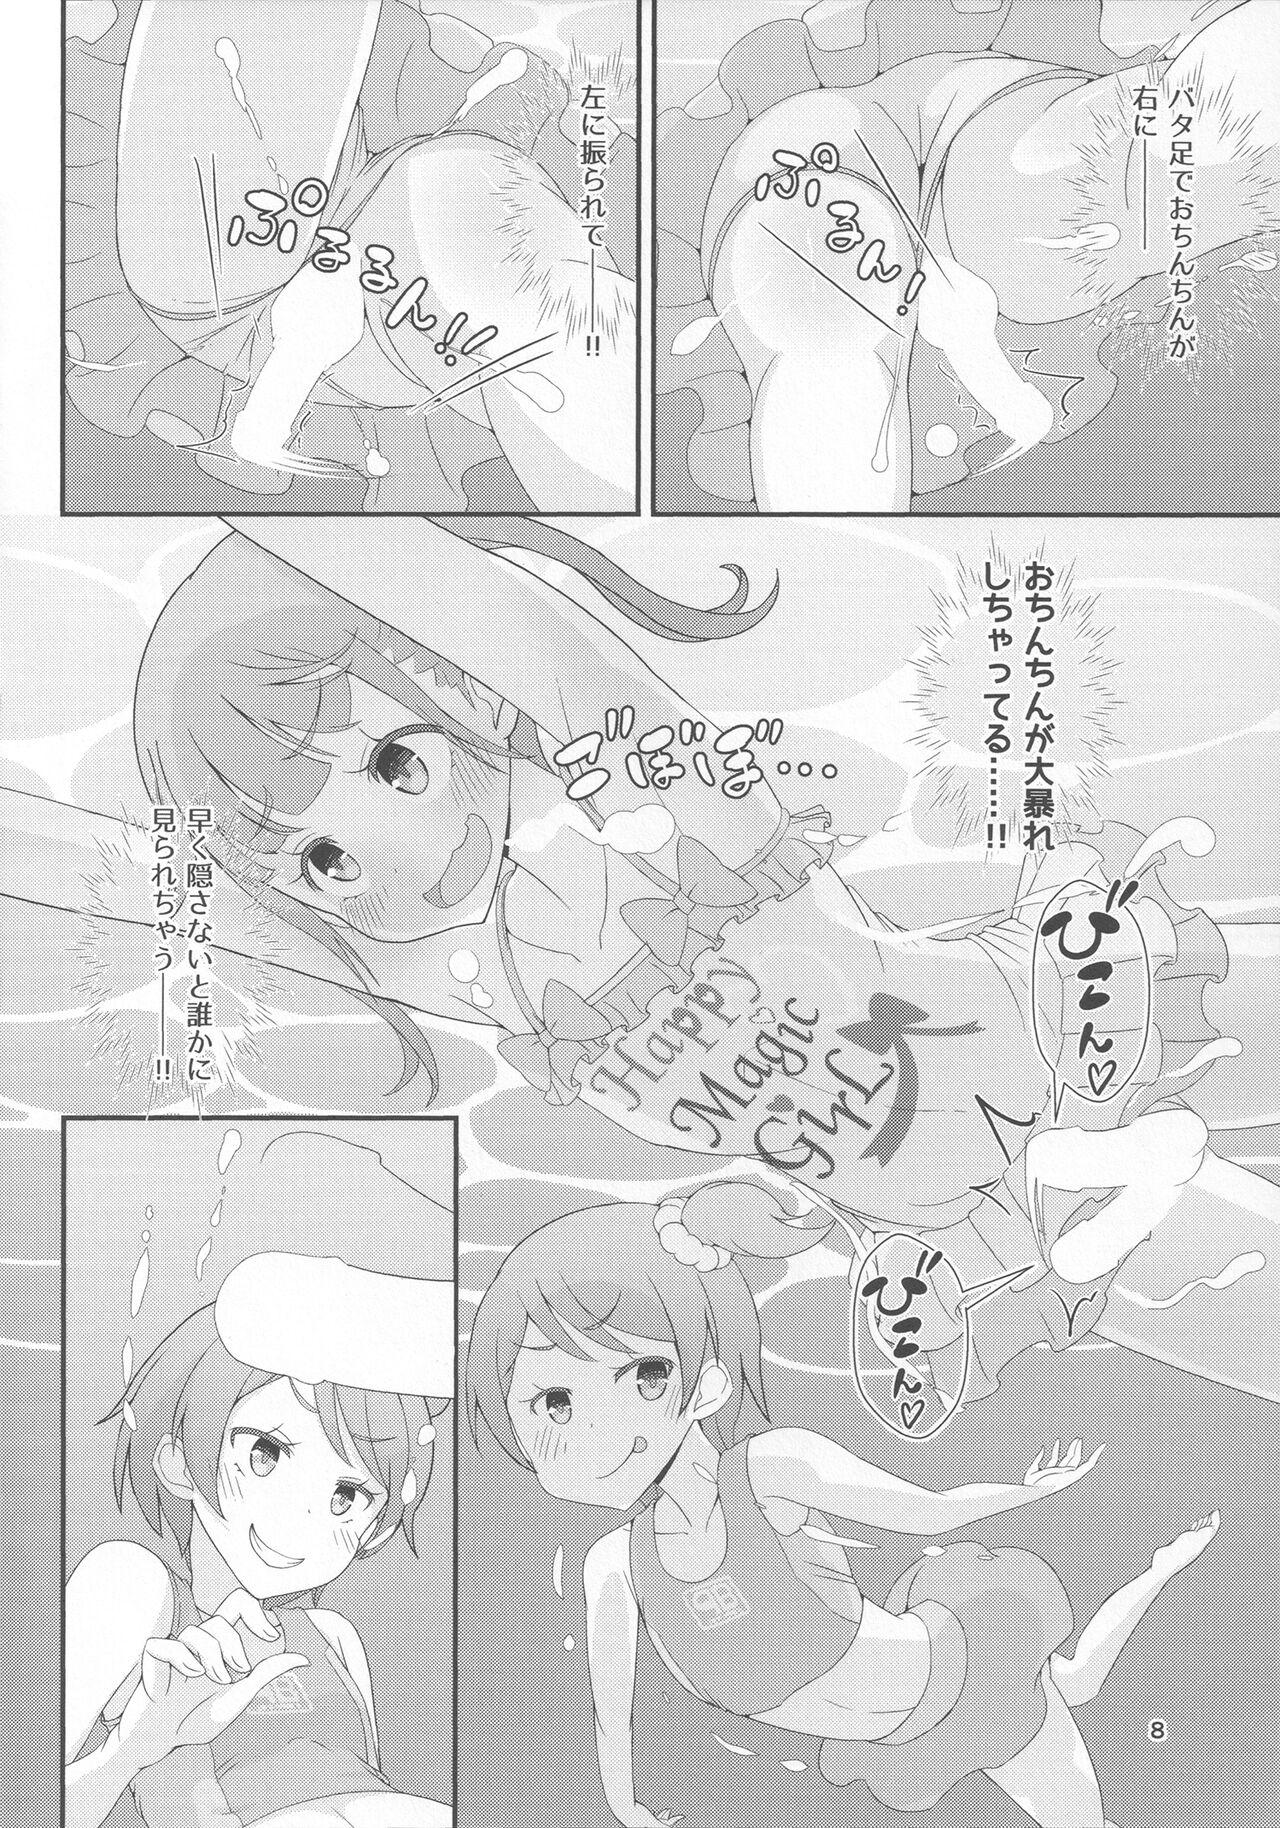 Sensei! Puuru shisetsu de joji Sou shite mite! | Sensei! Try wearing girl's clothes at a pool! 10